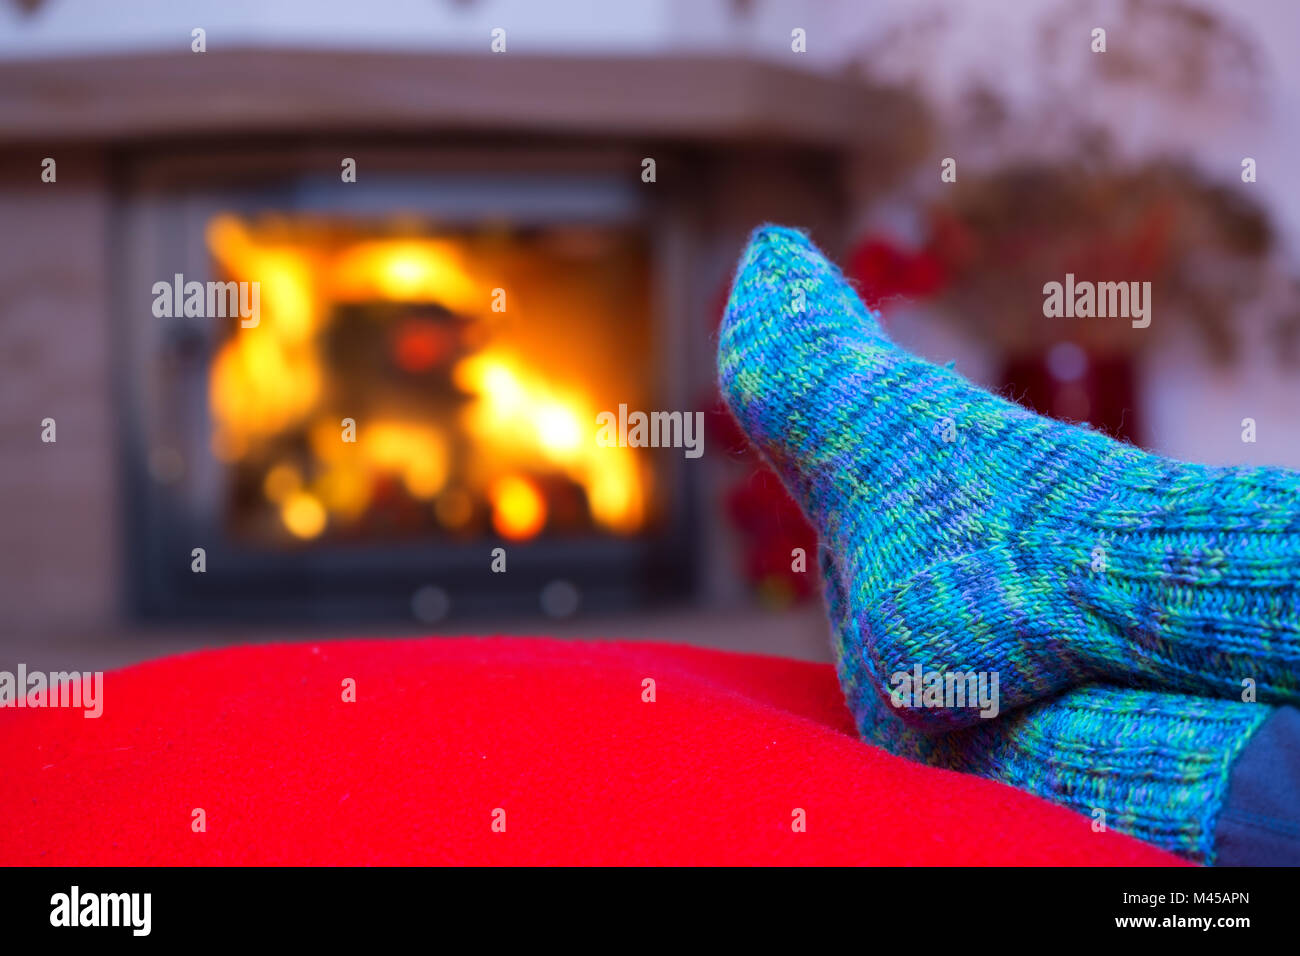 Feet in woollen blue socks by the fireplace. Stock Photo